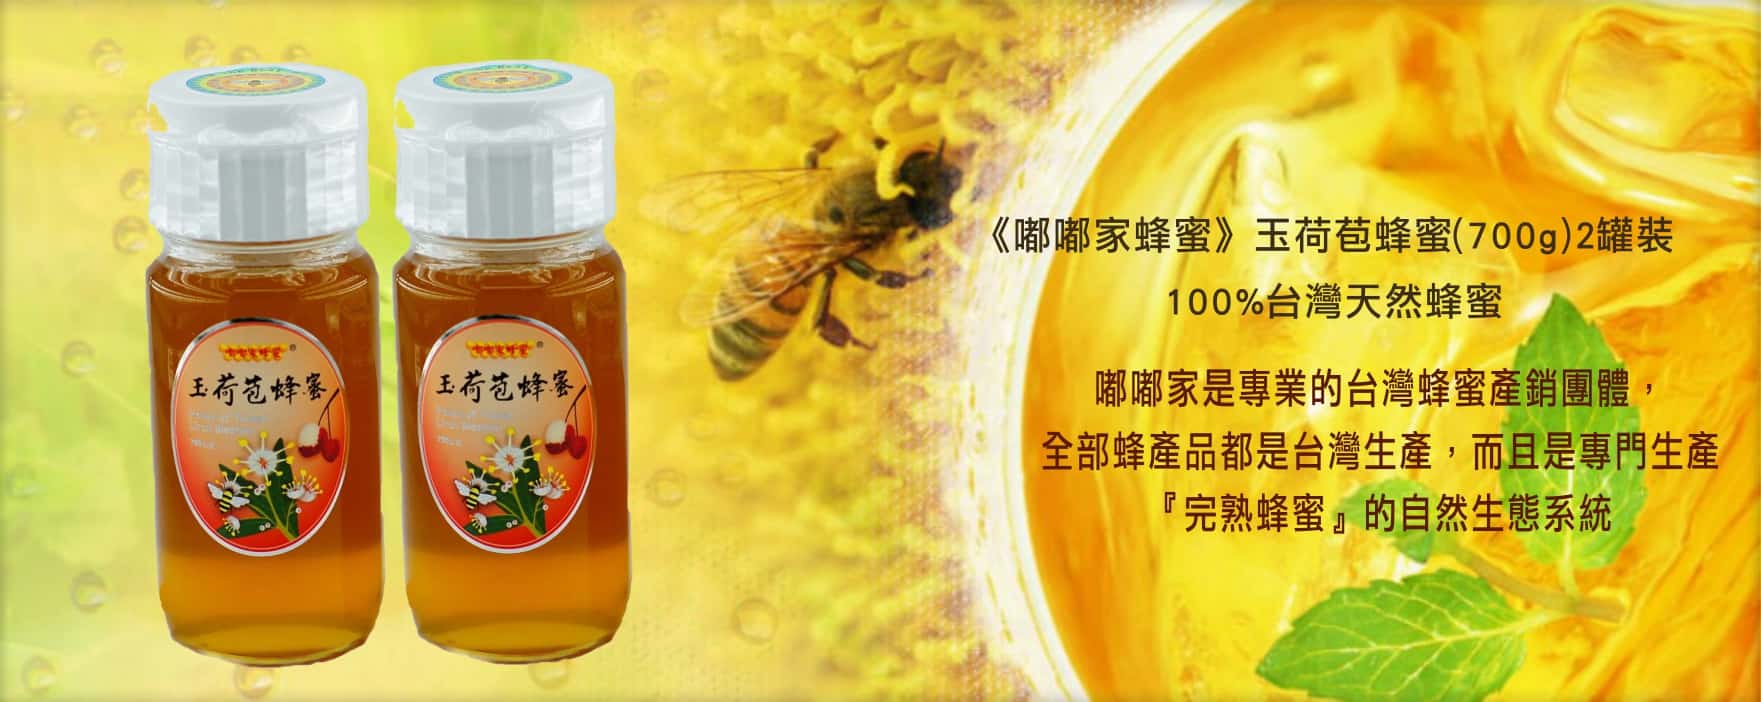 《嘟嘟家蜂蜜》玉荷苞蜂蜜2罐裝 (700g/罐)